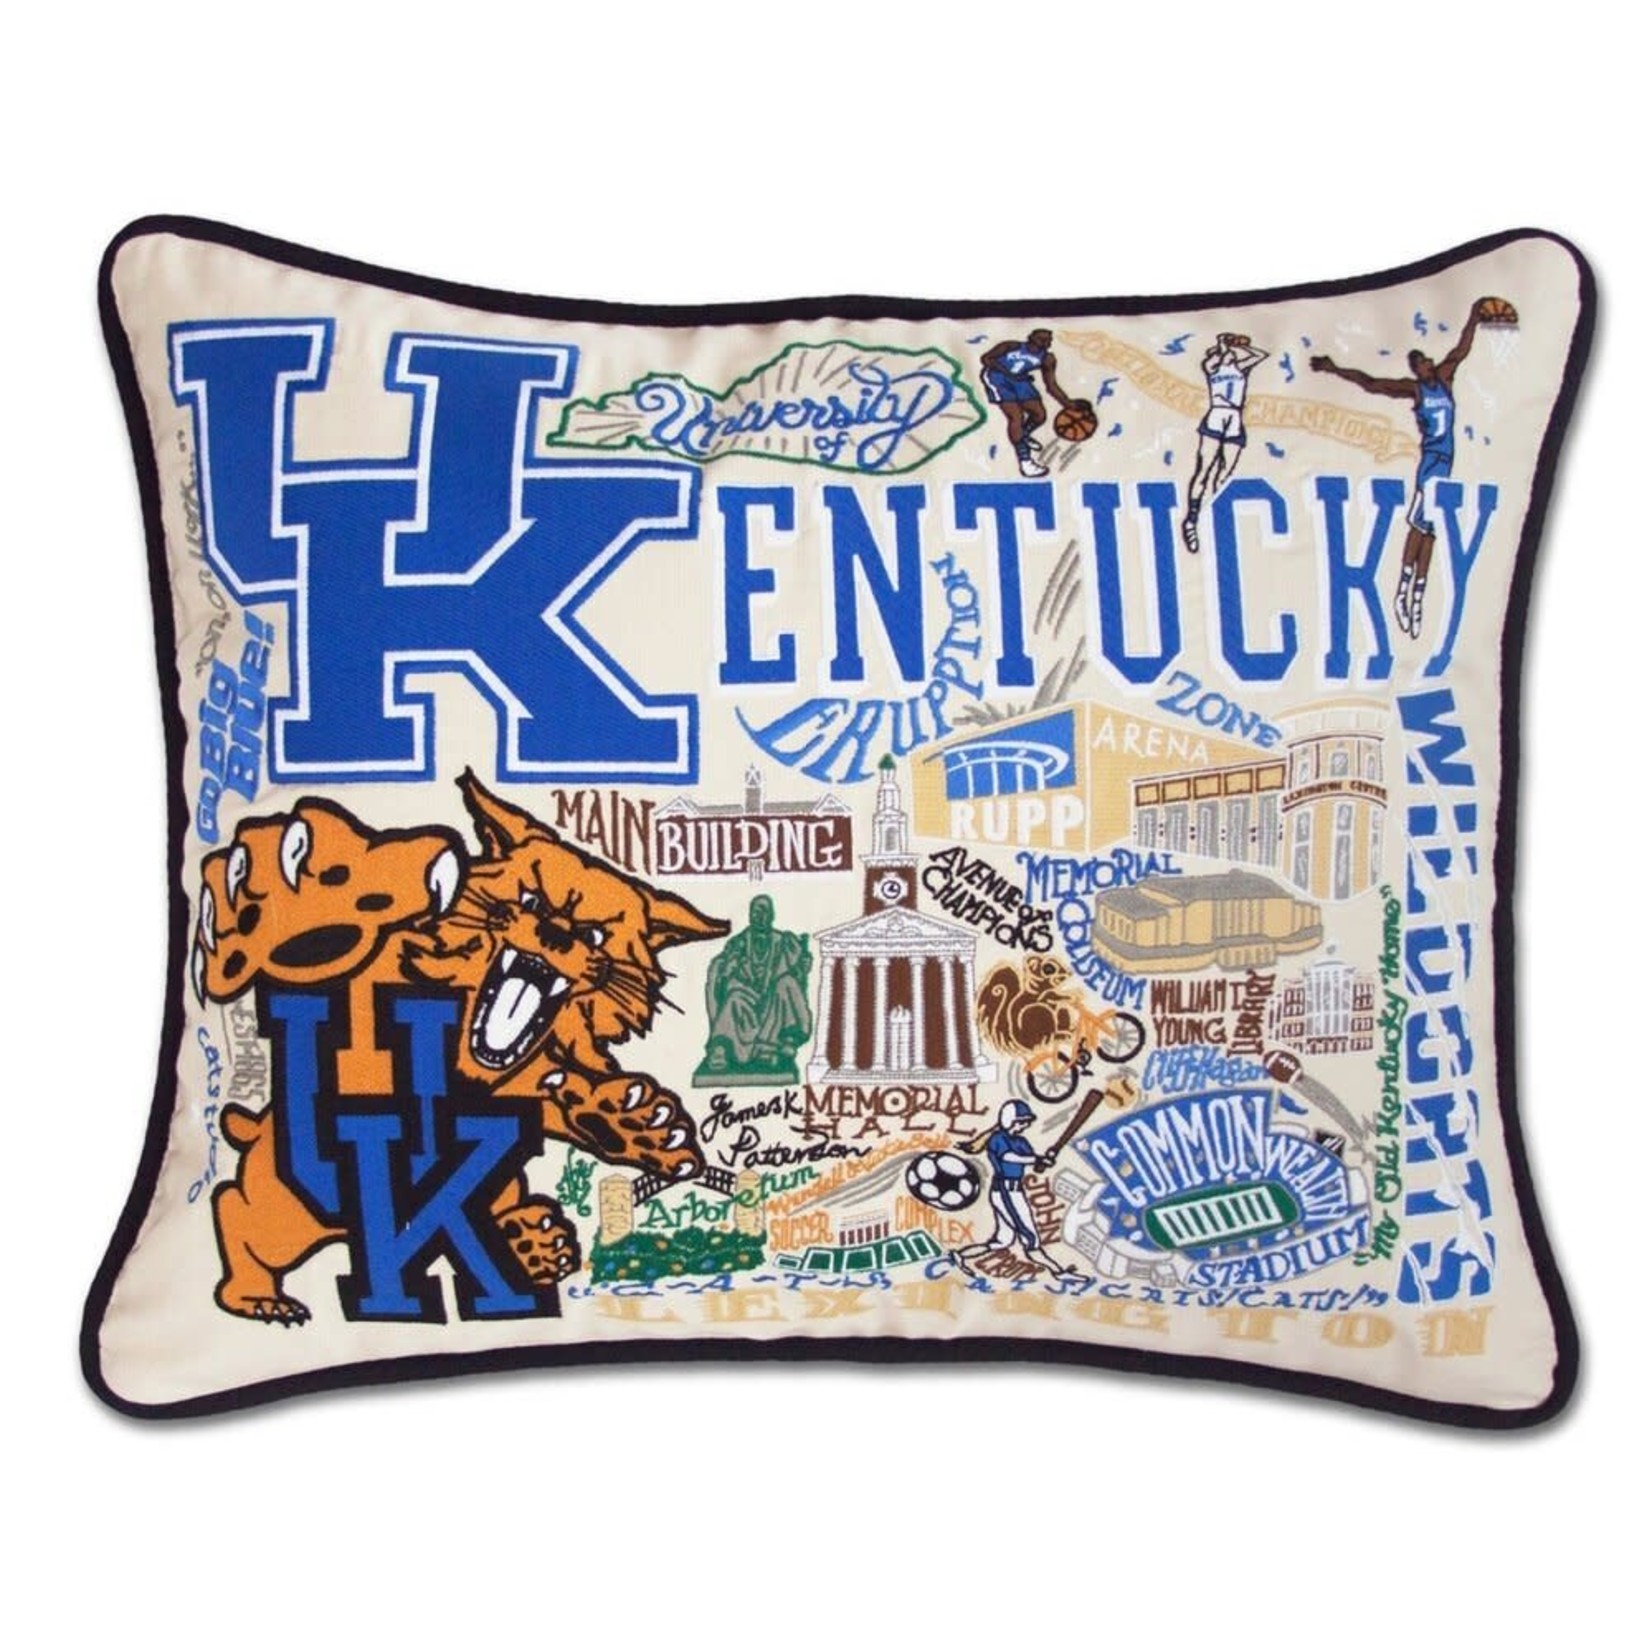 Catstudio Catstudio Collegiate University of Kentucky Pillow